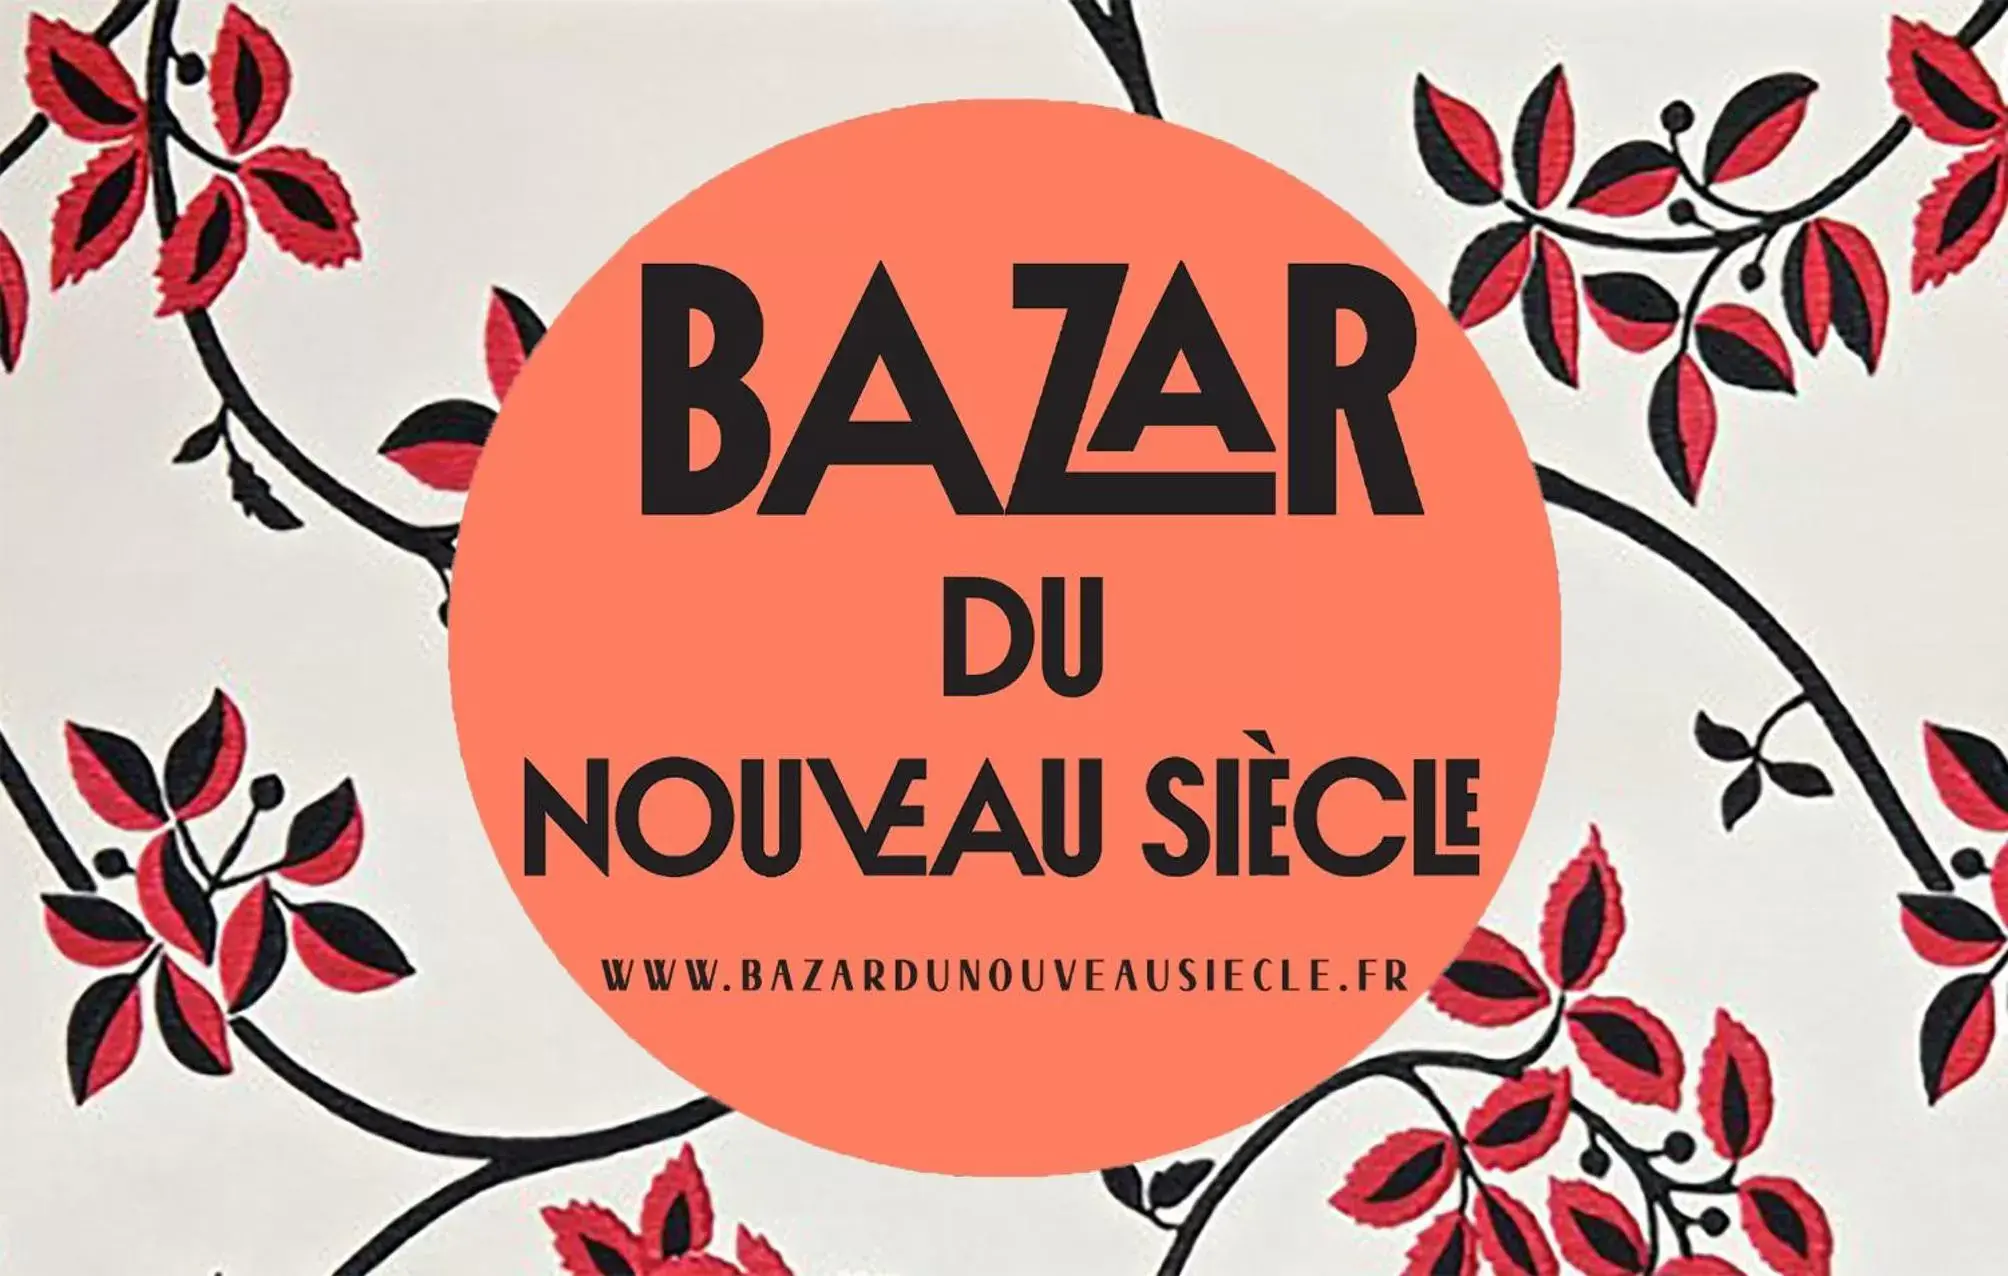 Property logo or sign in Bazar du Nouveau Siècle